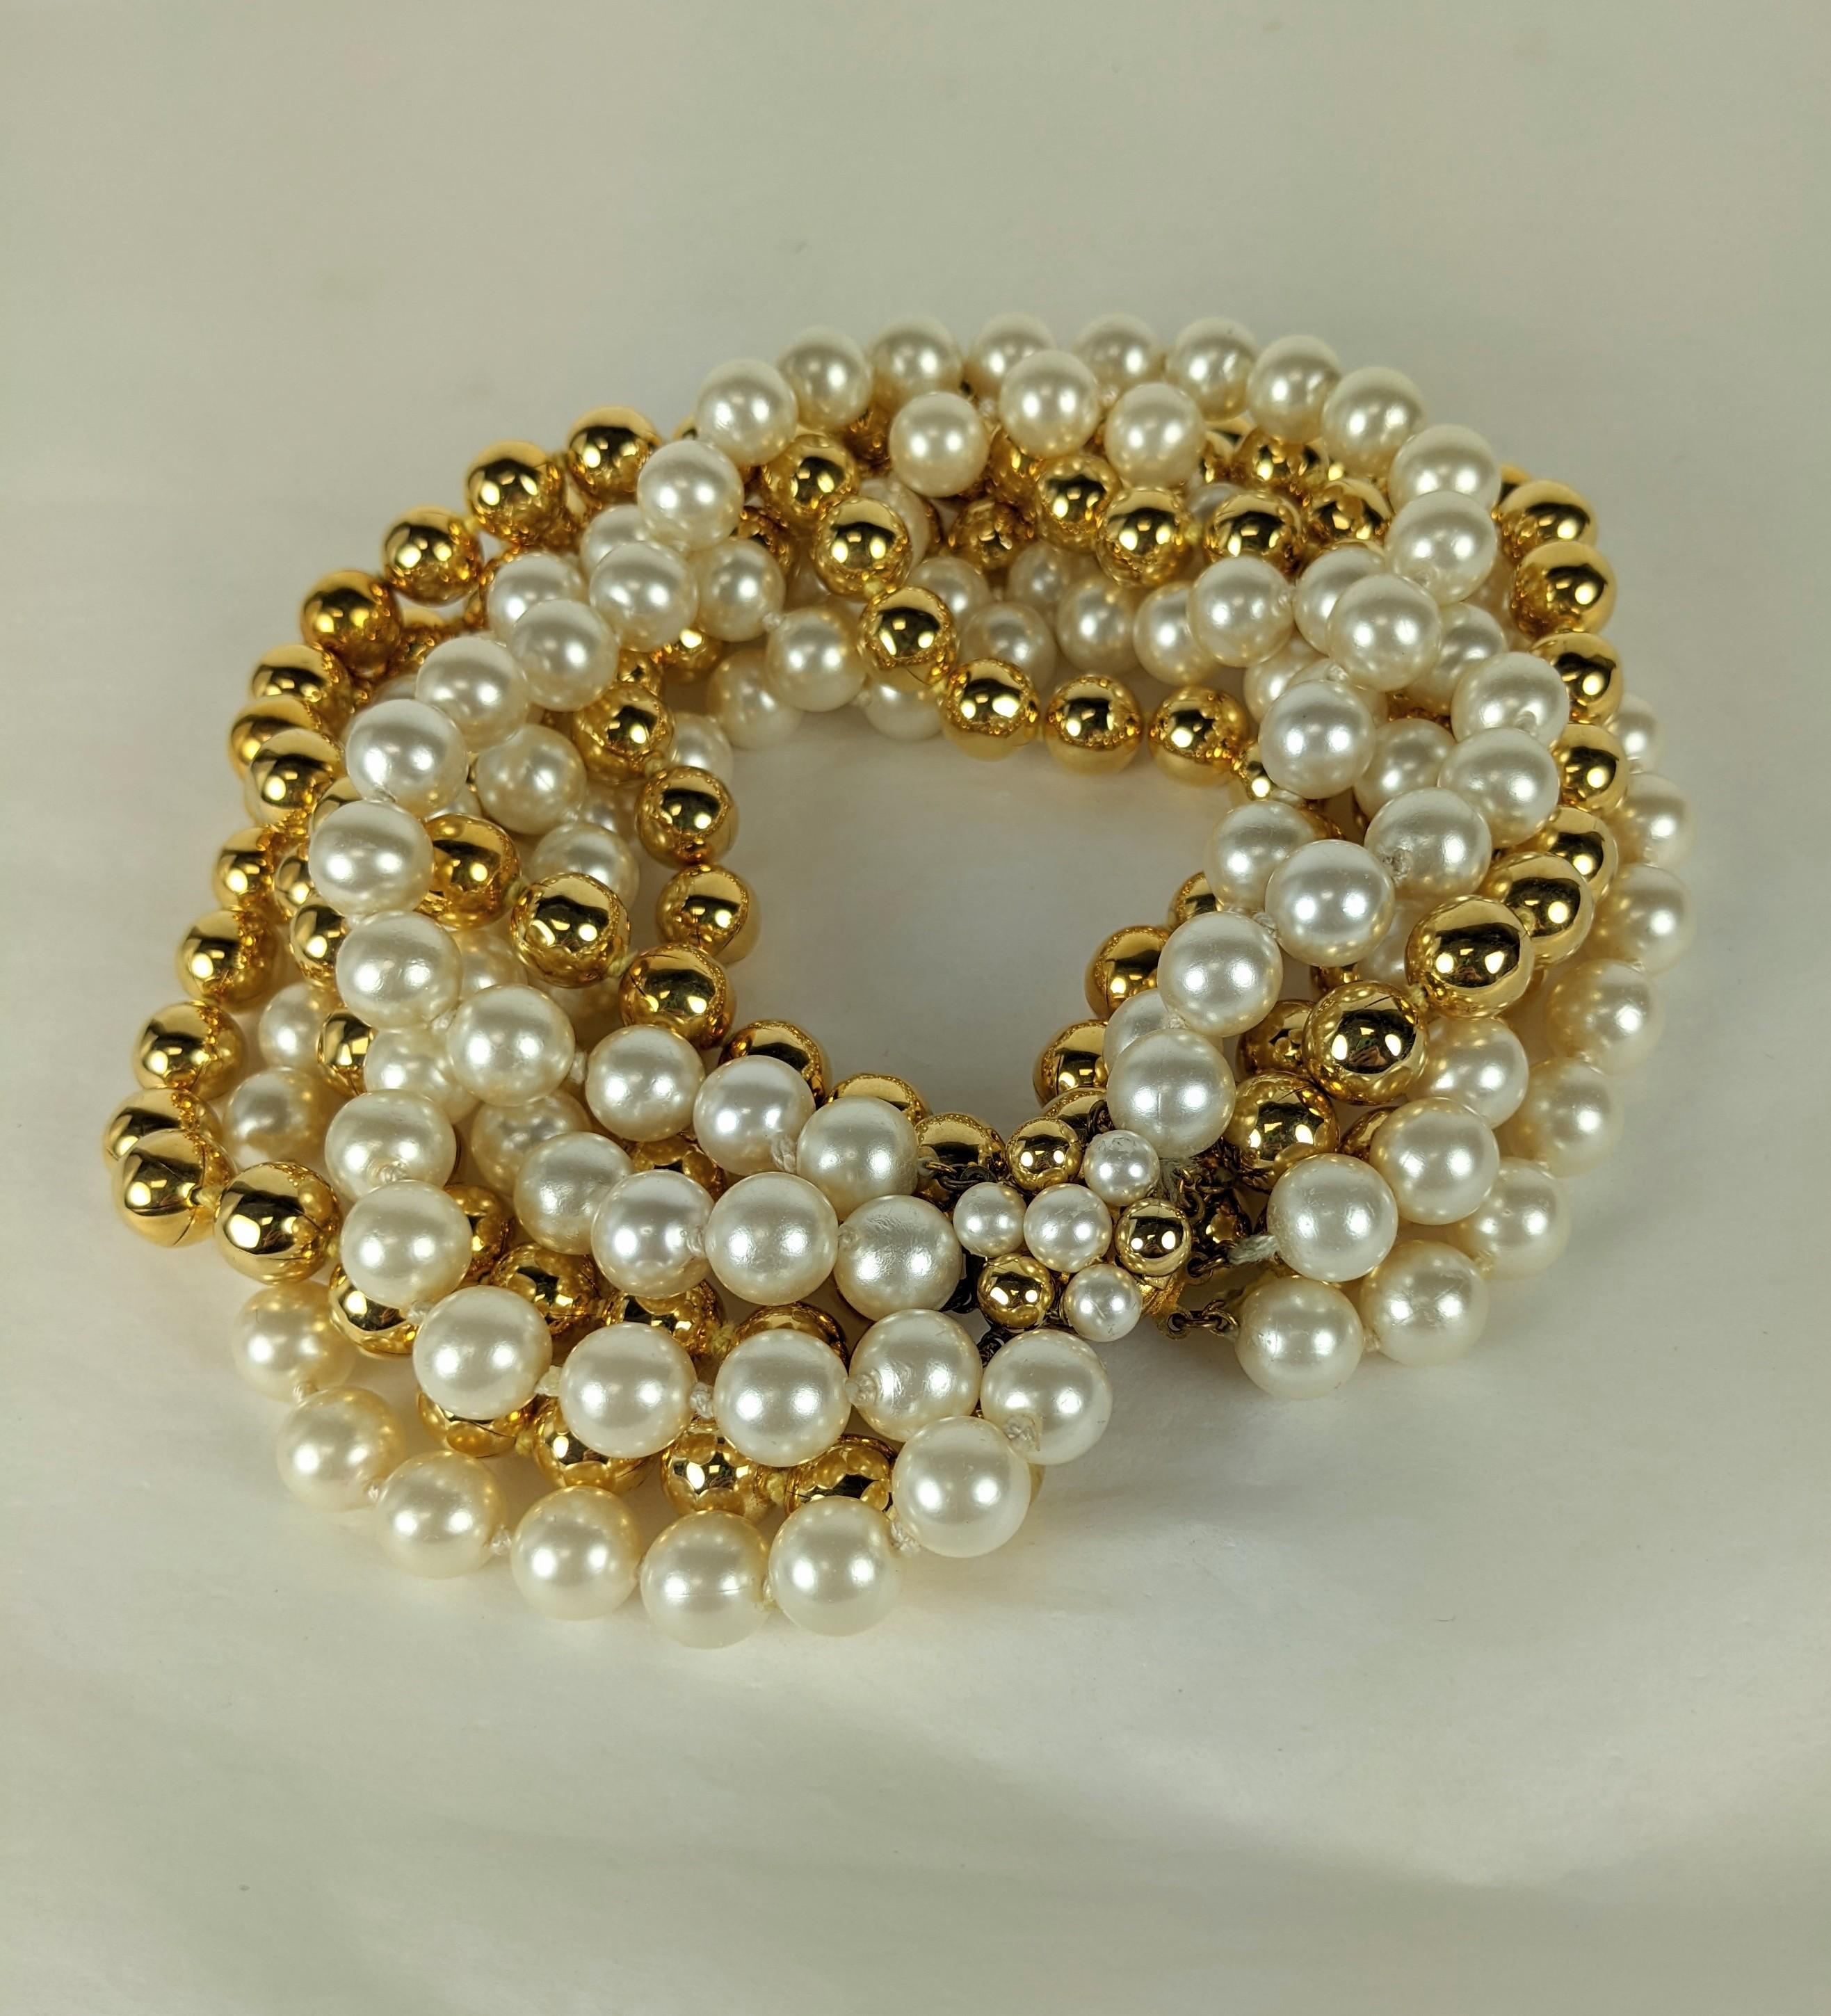 Givenchy Bunny Mellon Haute Couture Halskette mit mehreren Perlen und loser Torsade. Aus Perlmutt-Harz-Perlen und goldenen Perlen, die hoch auf dem Hals ruht, um mit der Strenge eines einfachen Kleides oder Pullovers im typischen Stil der 50er Jahre